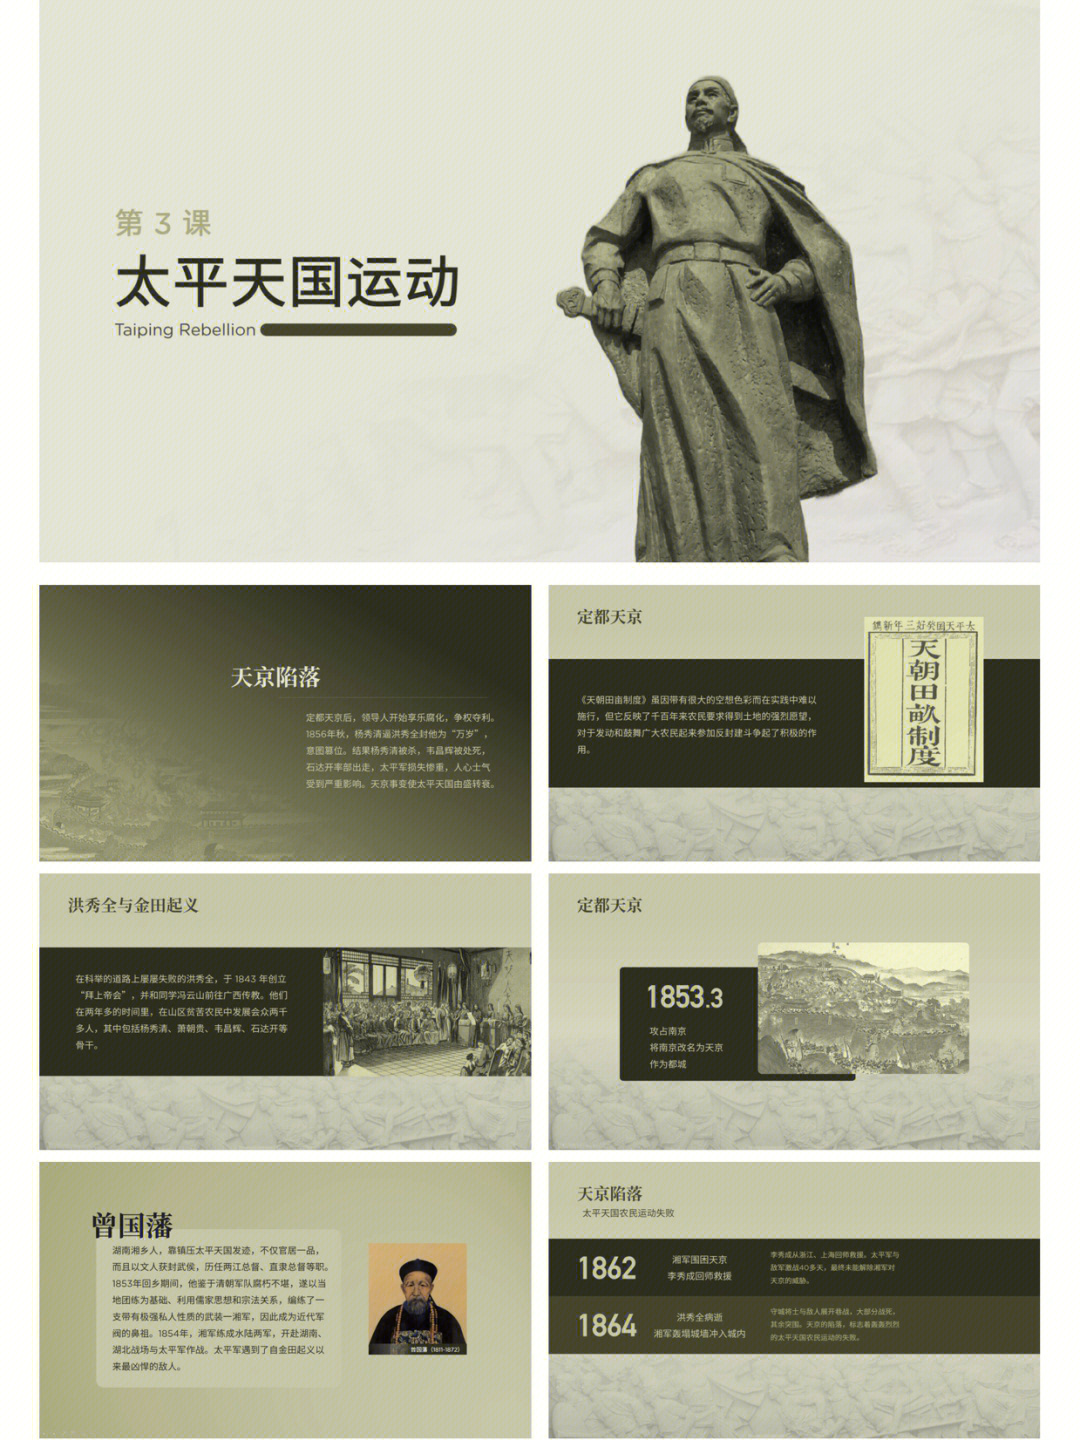 1851年,洪秀全在广西桂平县金田村发动武装起义,建号太平天国,太平